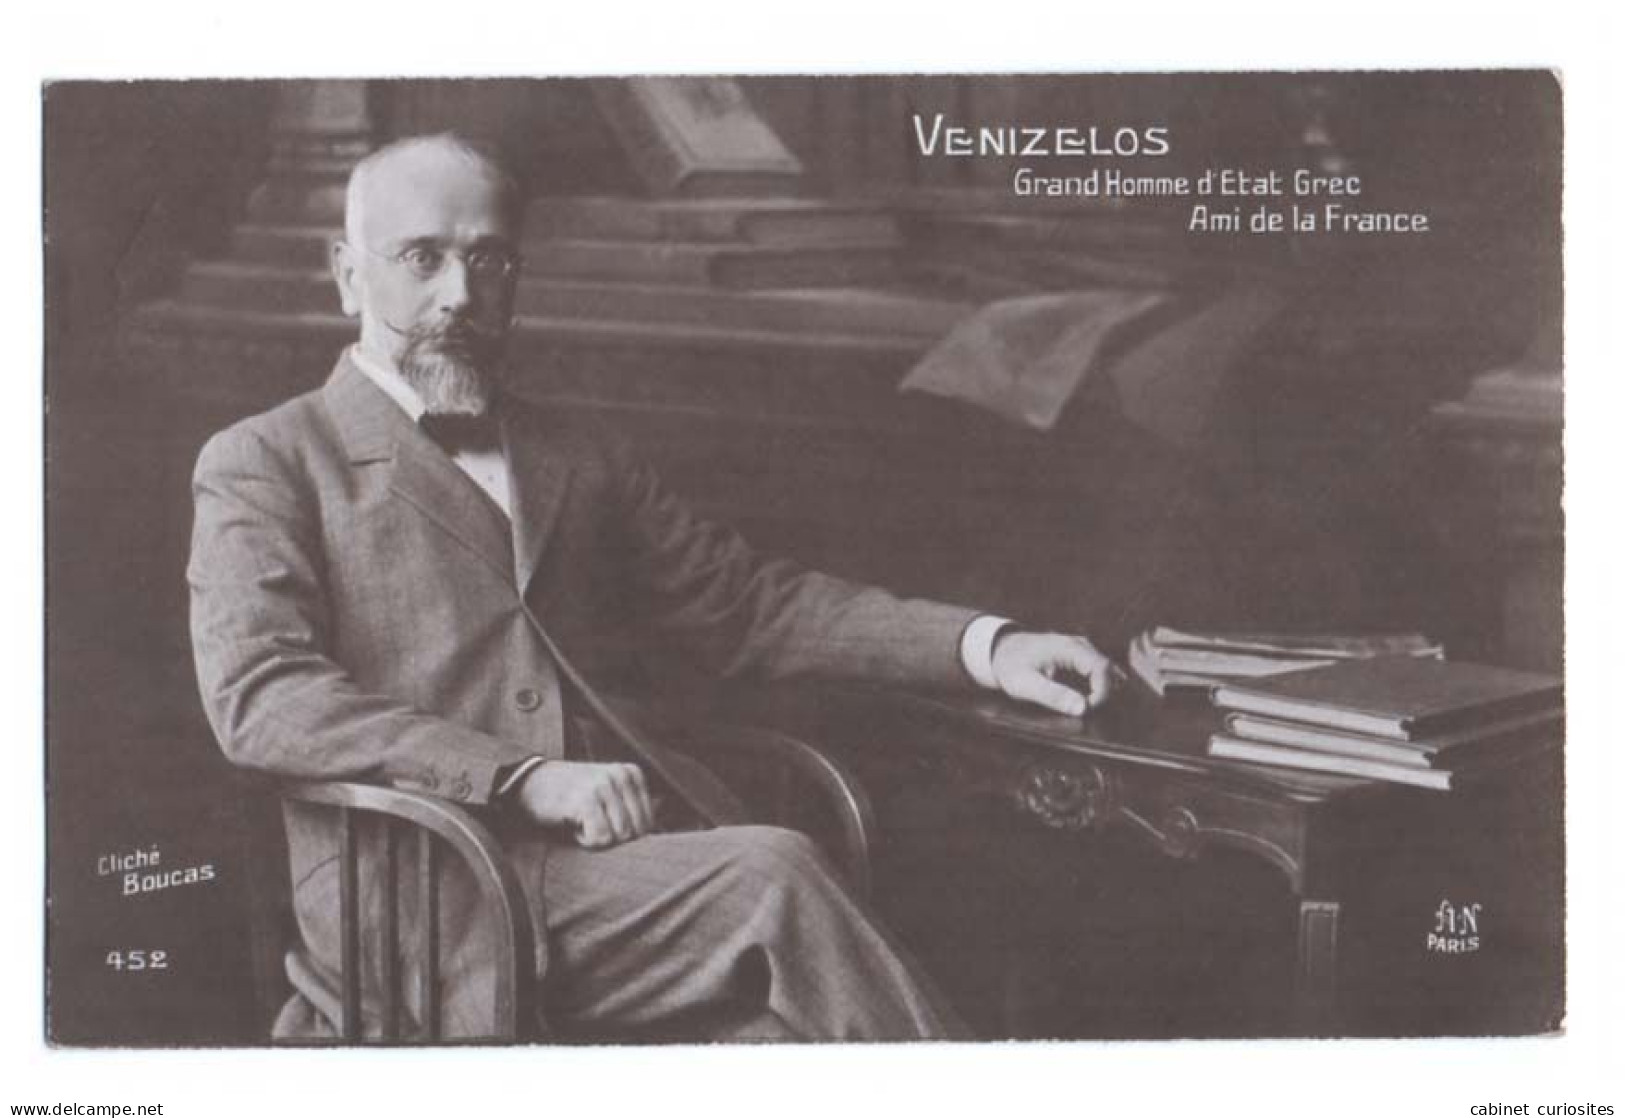 VENIZELOS - Grand Homme D'Etat Grec - Ami De La France - Cliché Boucas - Beau Portrait - Premier Ministre De Grèce 1910 - Guerre 1914-18